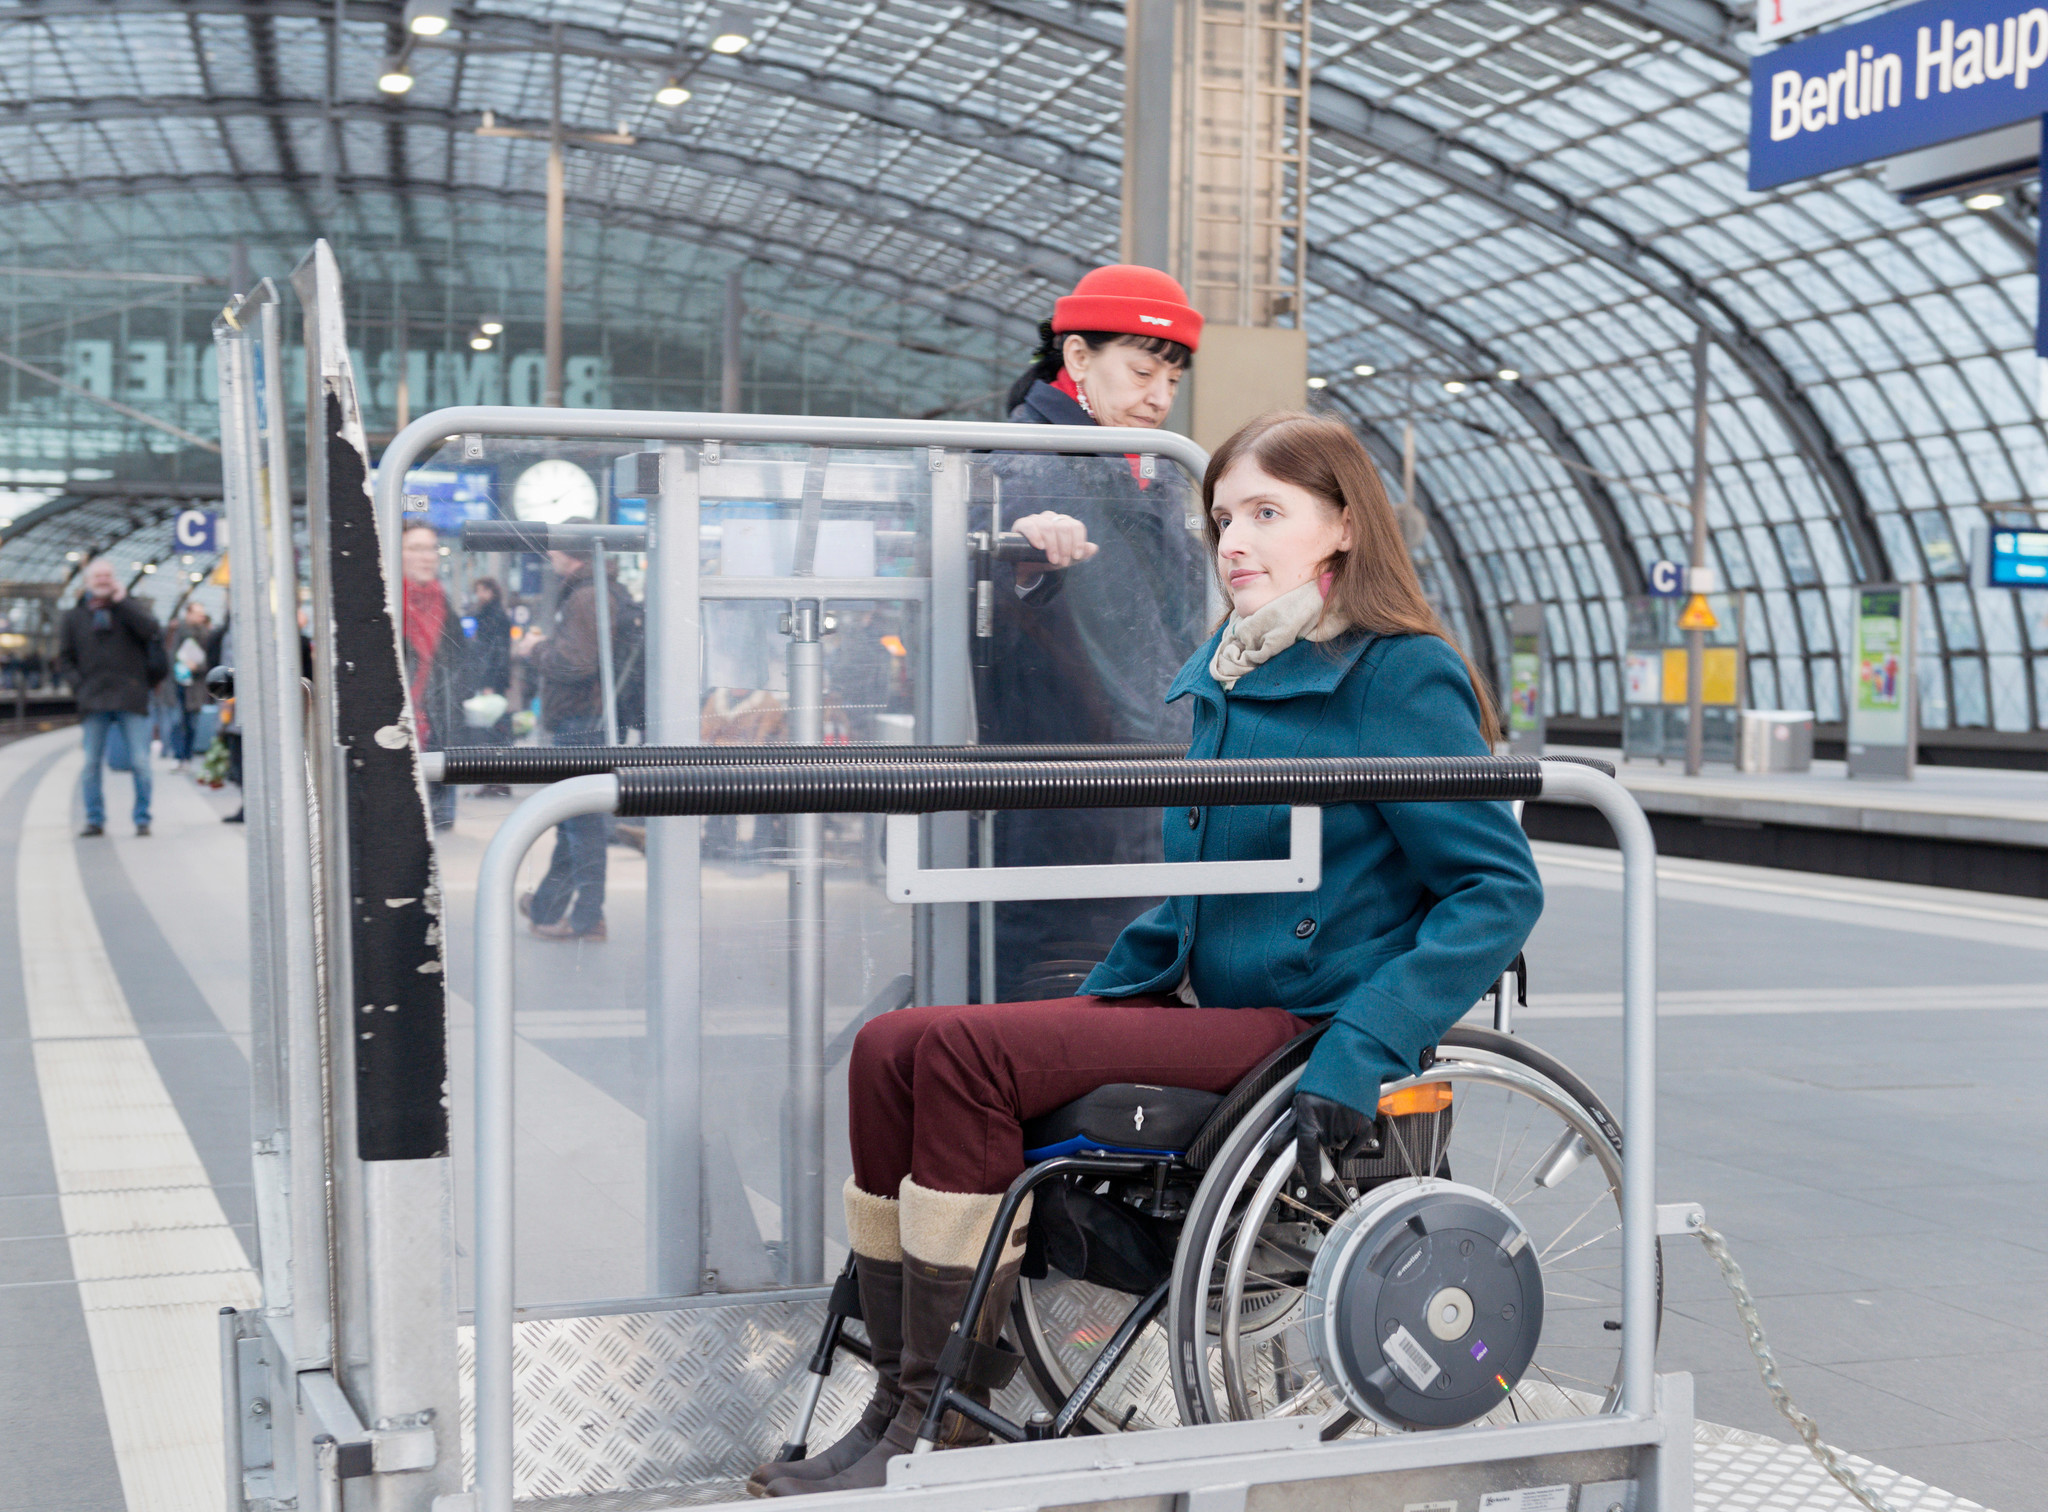 Freie Fahrt für blinden Passagier: Blaupause einer behindertenfreundlichen Verkehrswende